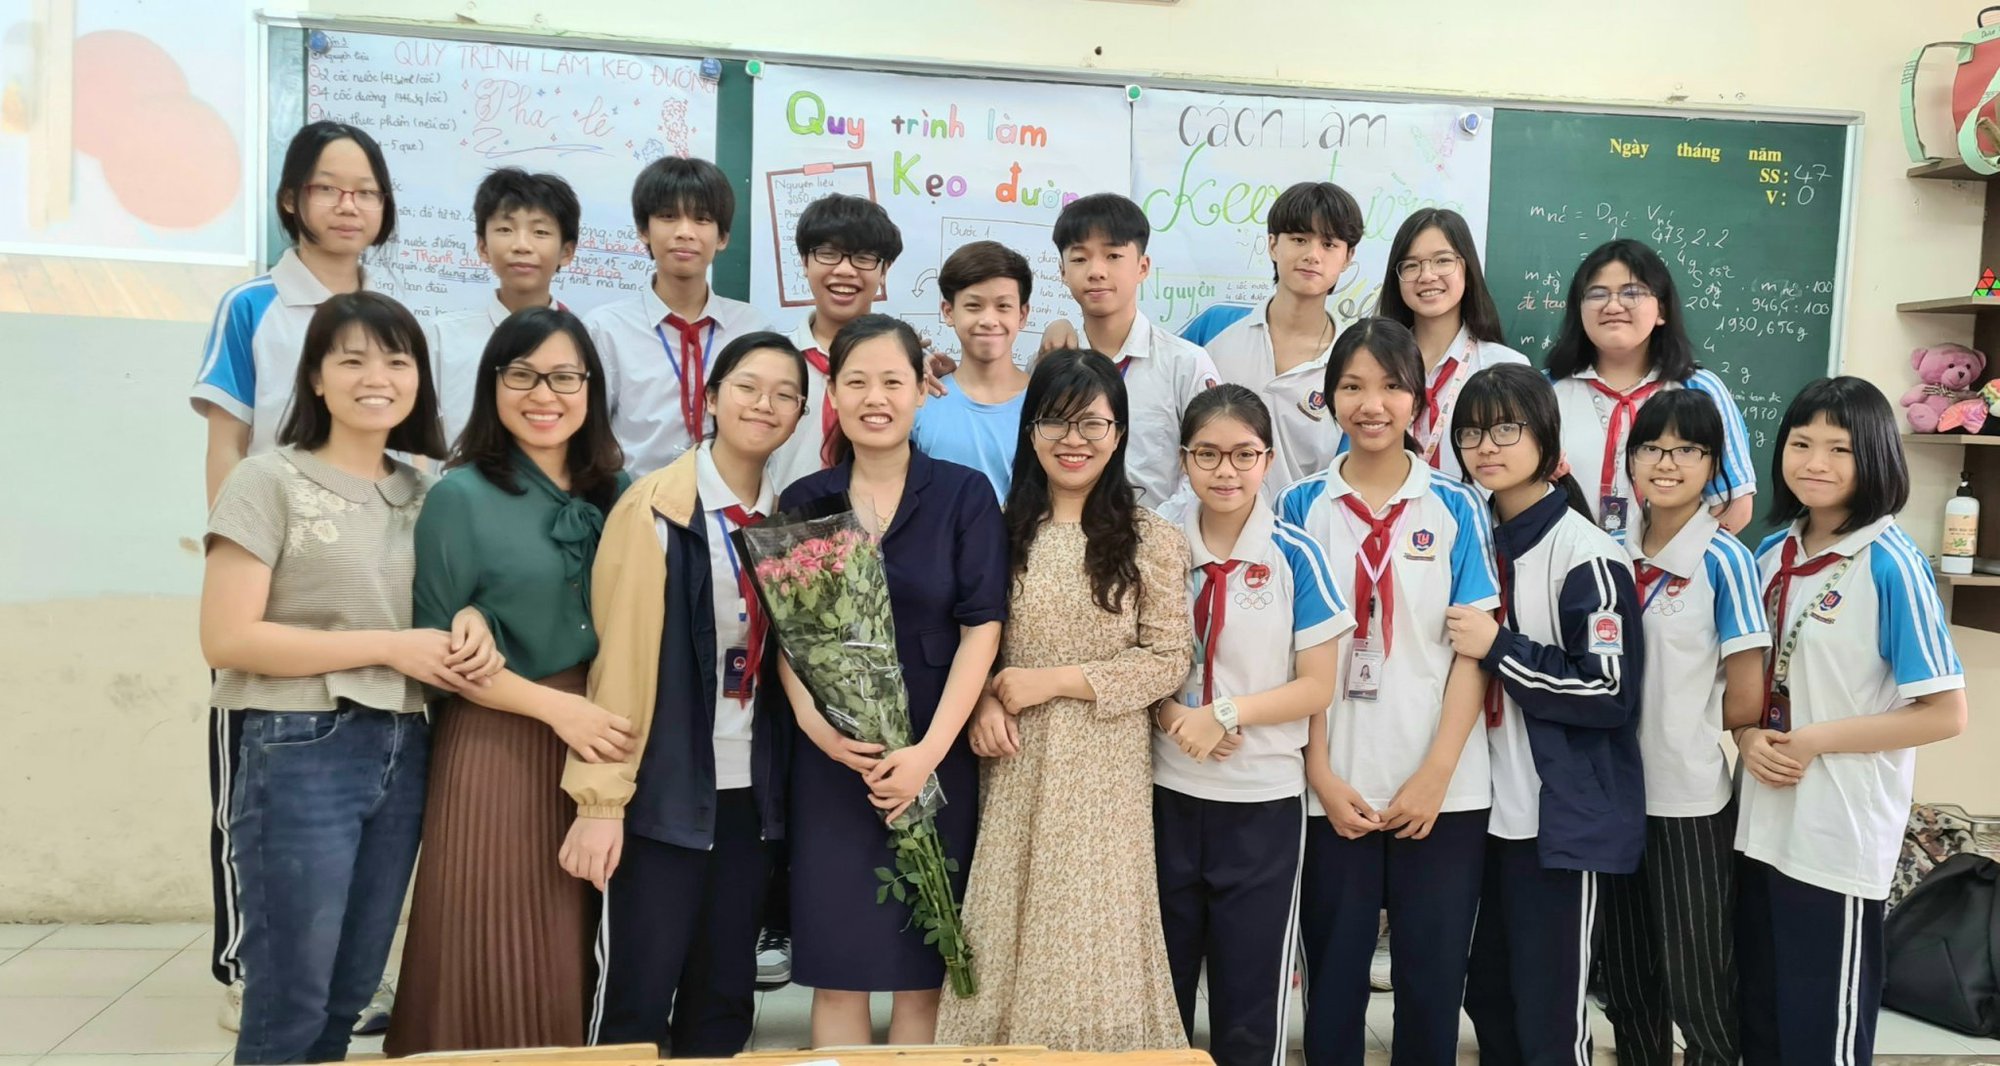 Gặp cô giáo trẻ nhất trong đề cử Nhà giáo Tiêu biểu năm 2022 Hà Nội với nhiều ý tưởng khác biệt - Ảnh 2.